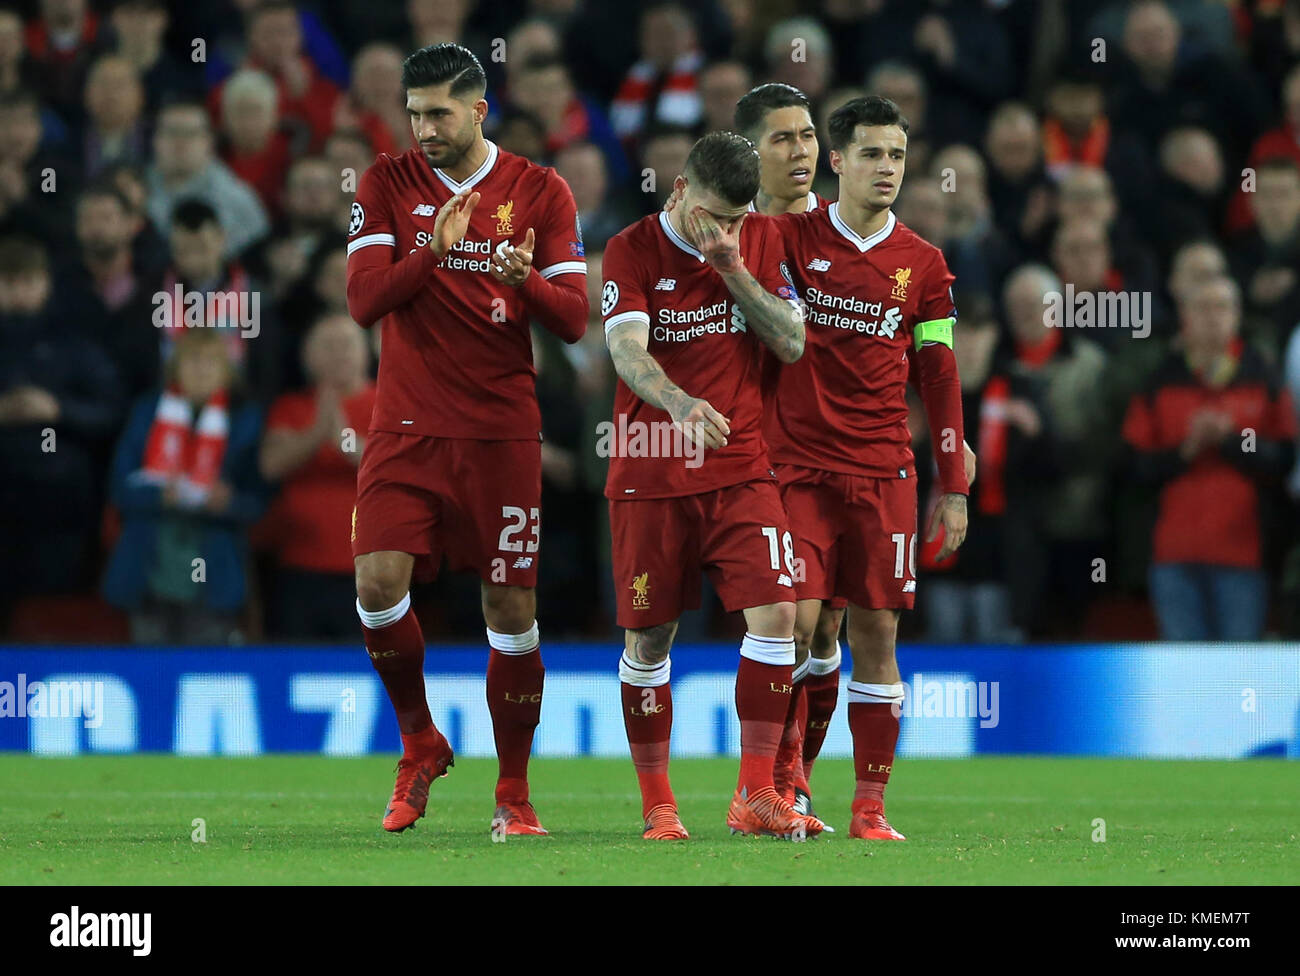 Le centre de Liverpool, Alberto Moreno (deuxième à gauche) est subsituted après réception d'une blessure au cours de la Ligue des Champions, Groupe E match à Anfield, Liverpool. Banque D'Images